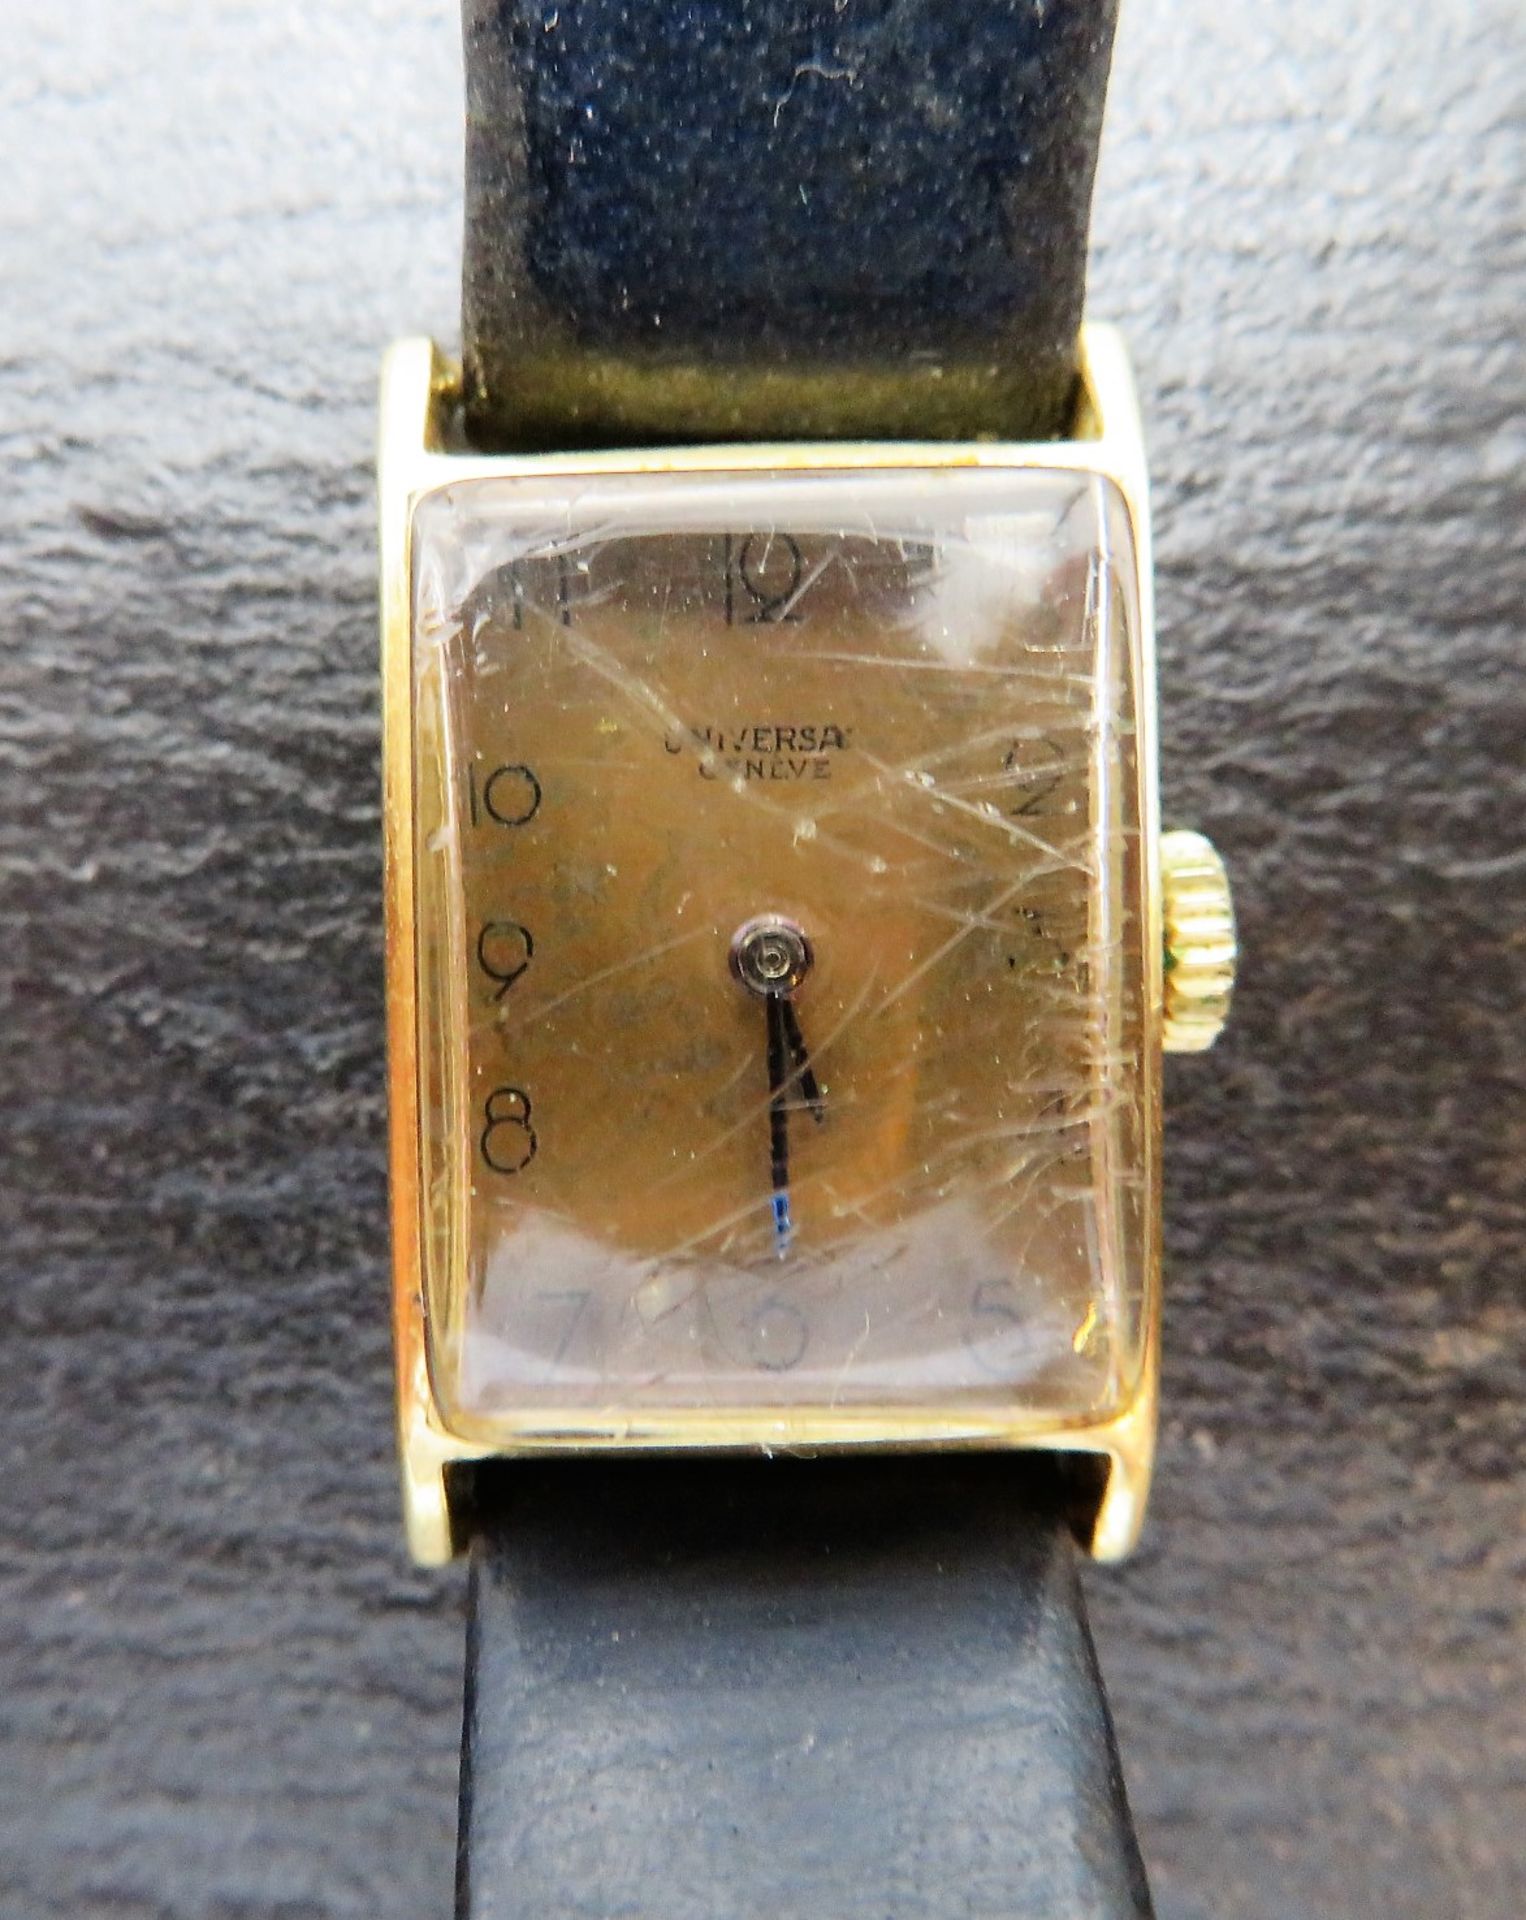 DAU, Universal Genève, 1920/30er Jahre, Gehäuse 585er Gelbgold, gepunzt, brutto 12,2 g, Kronenaufzu